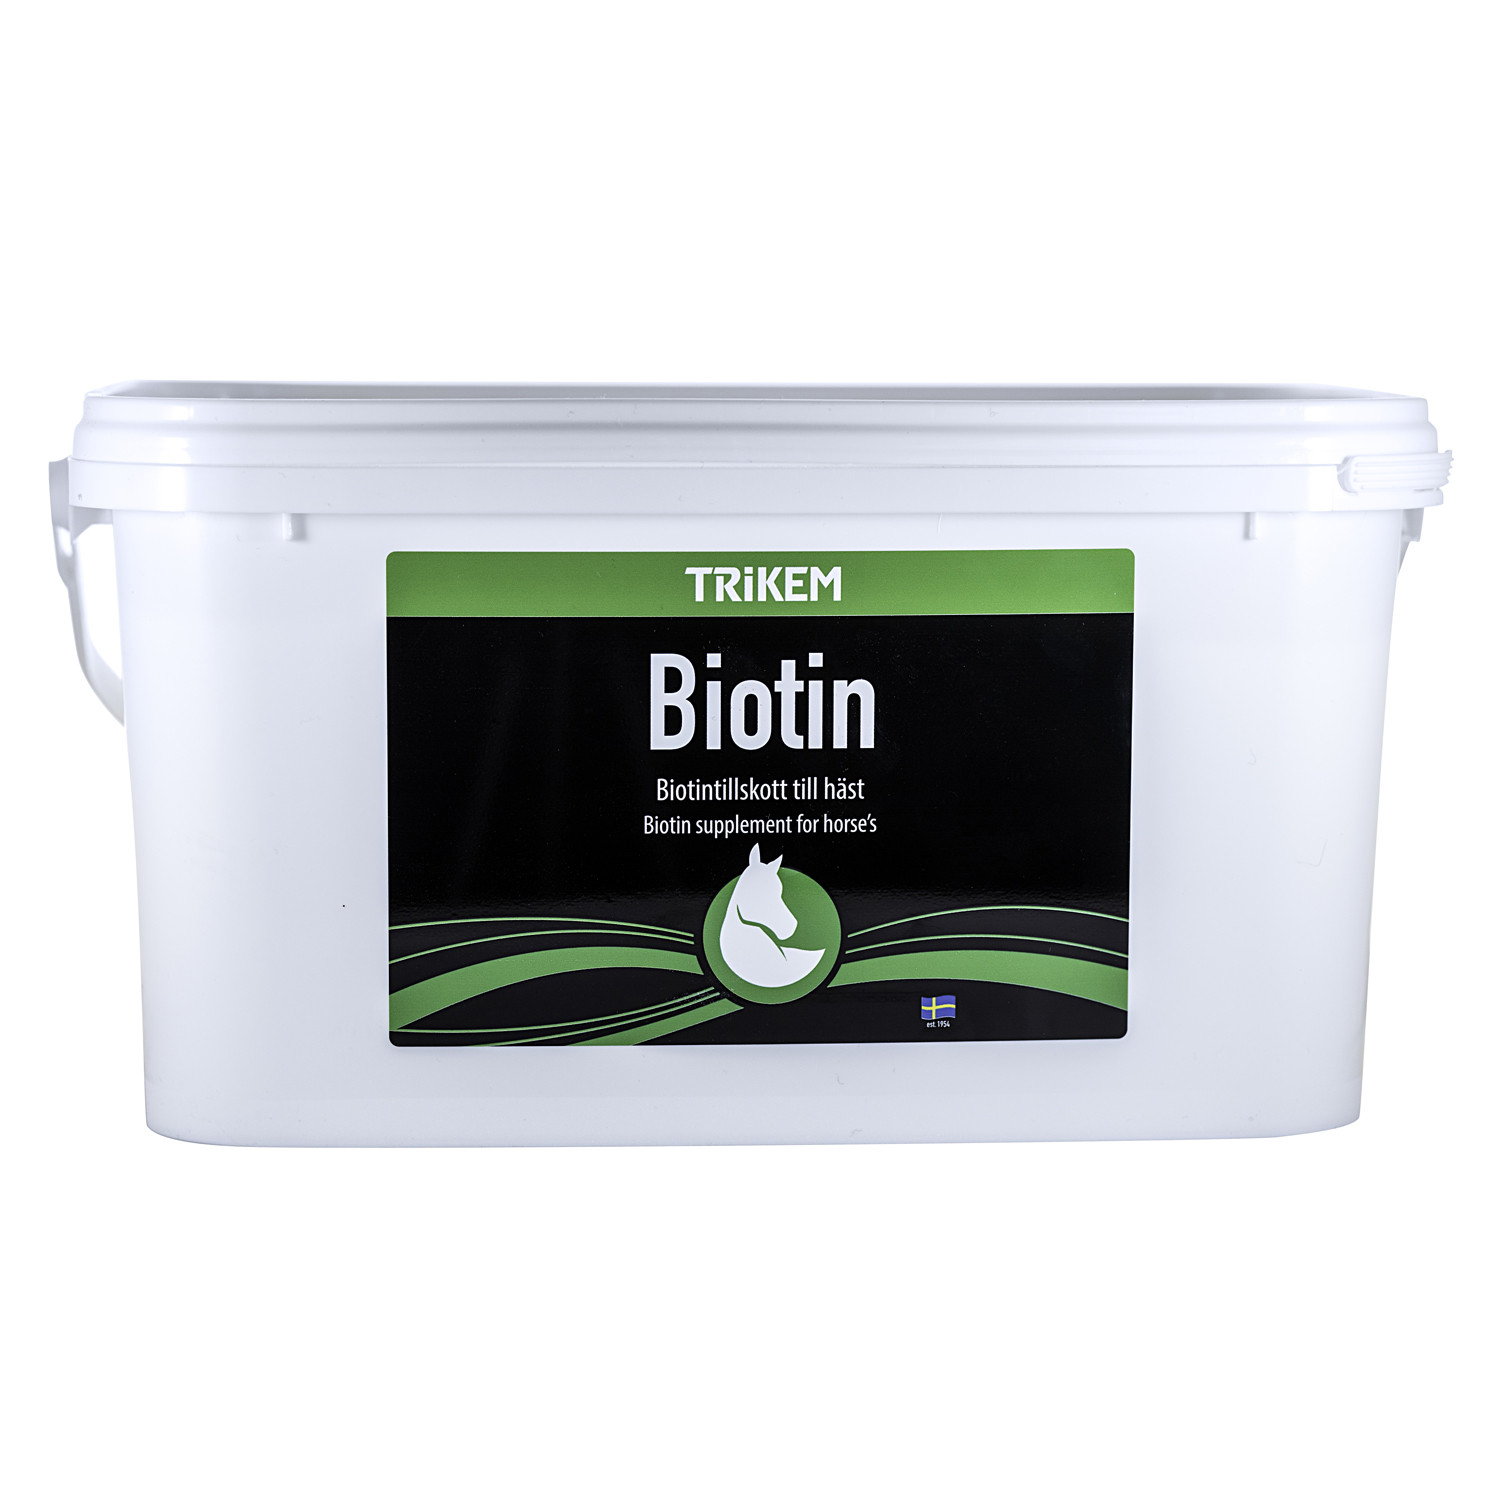 Trikem biotin 4 kg